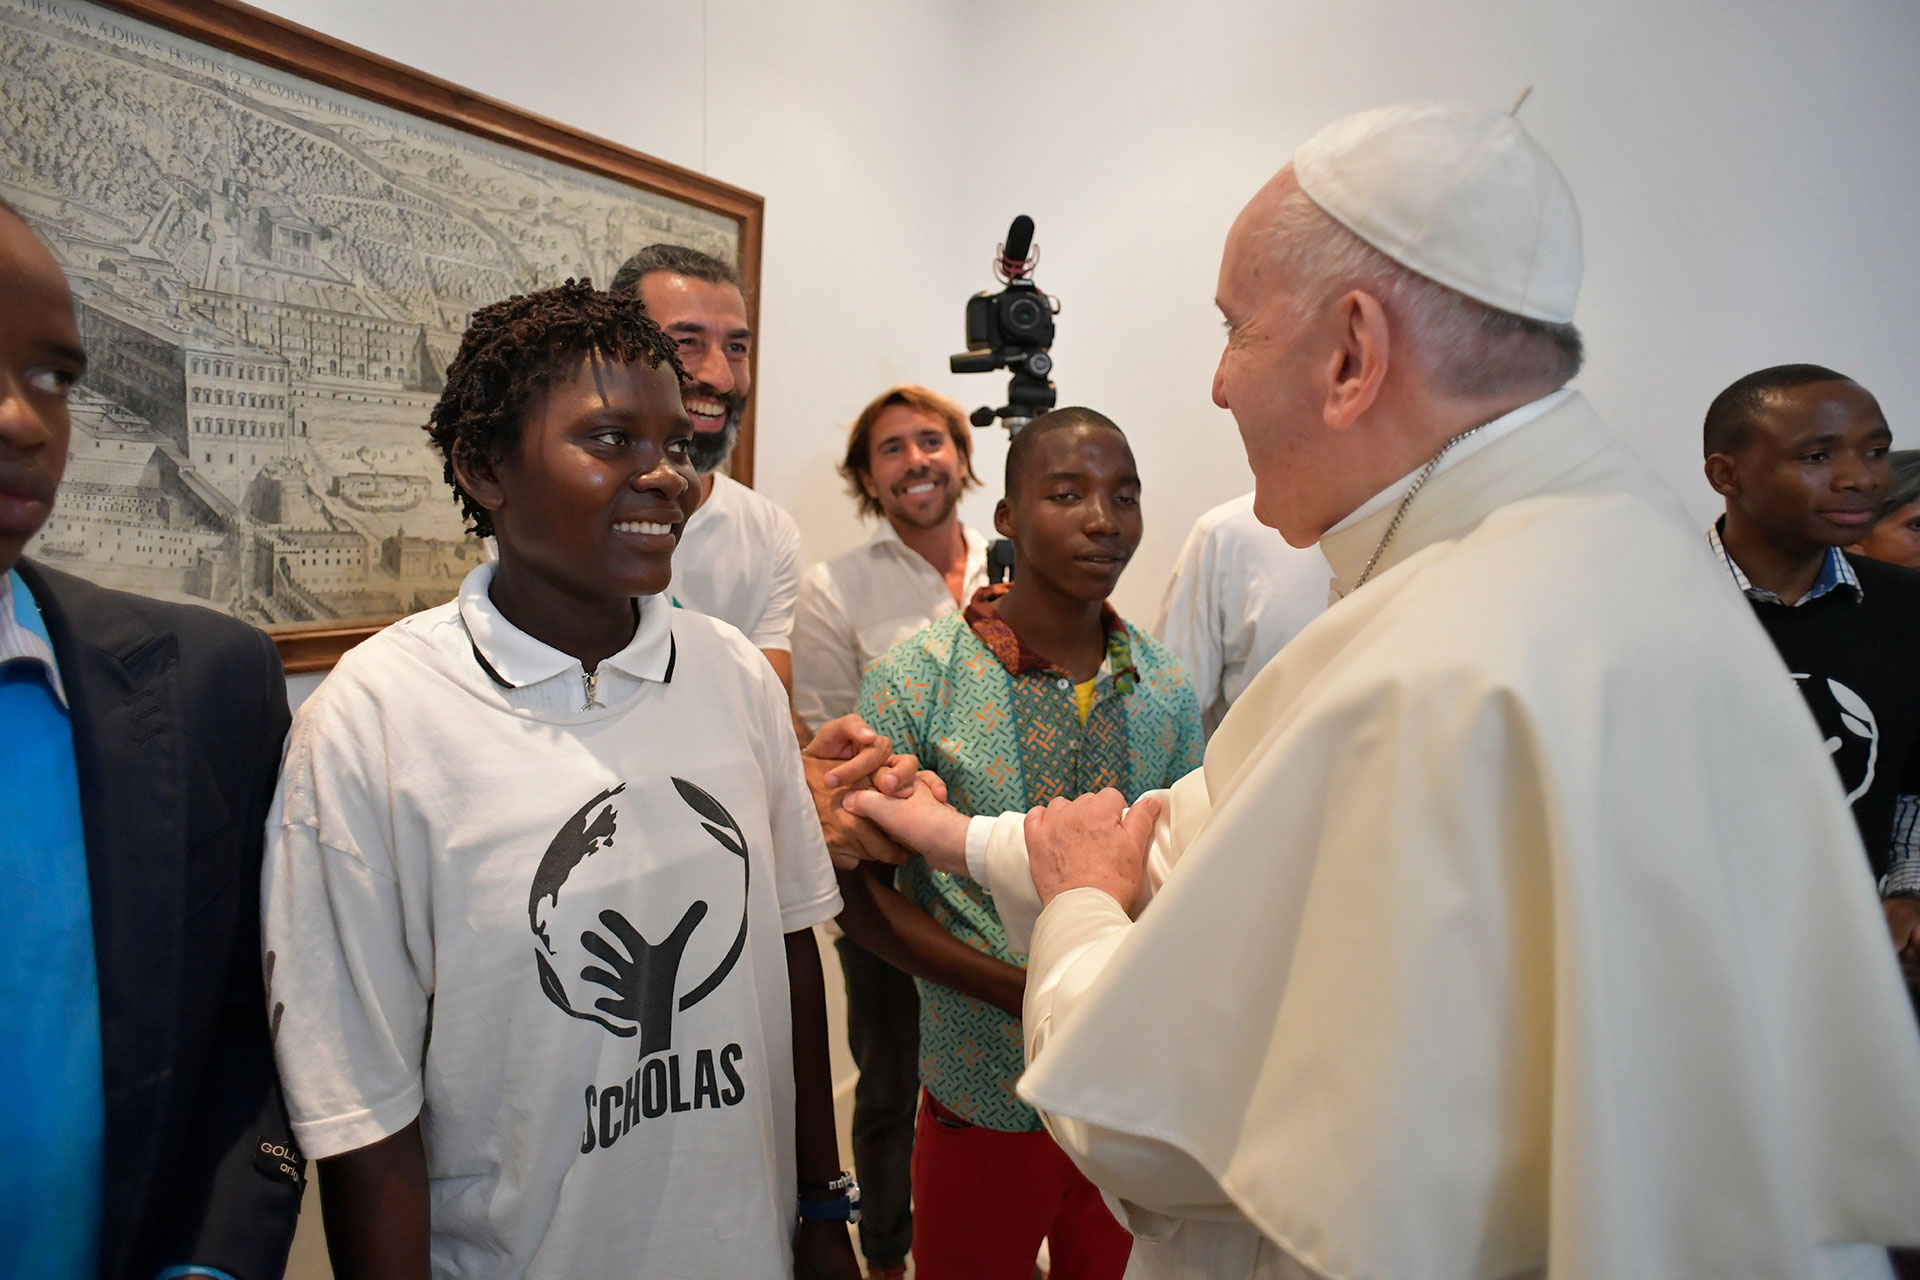 El Papa Francisco se reunió en un encuentro emocionante con jóvenes en Mozambique (Reuters)